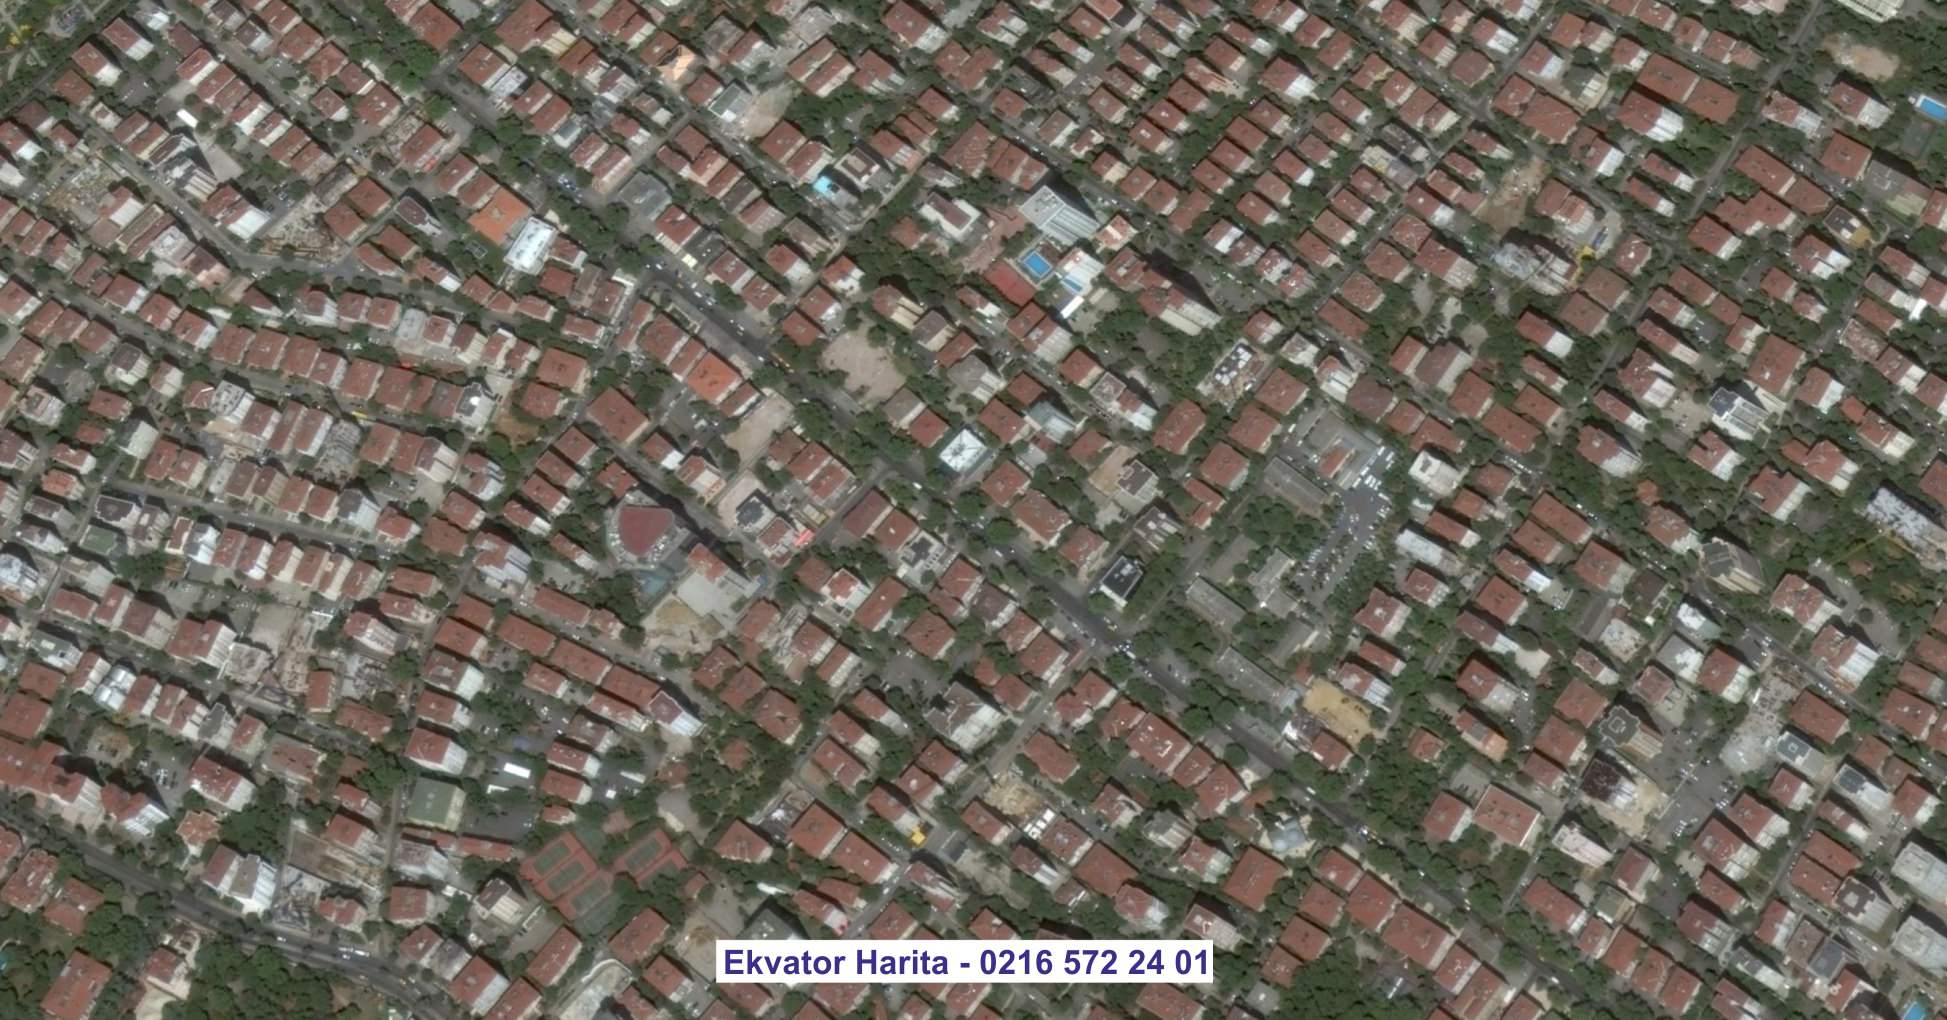 Seferihisar Uydu Görüntüsü Örnek Fotoğrafı